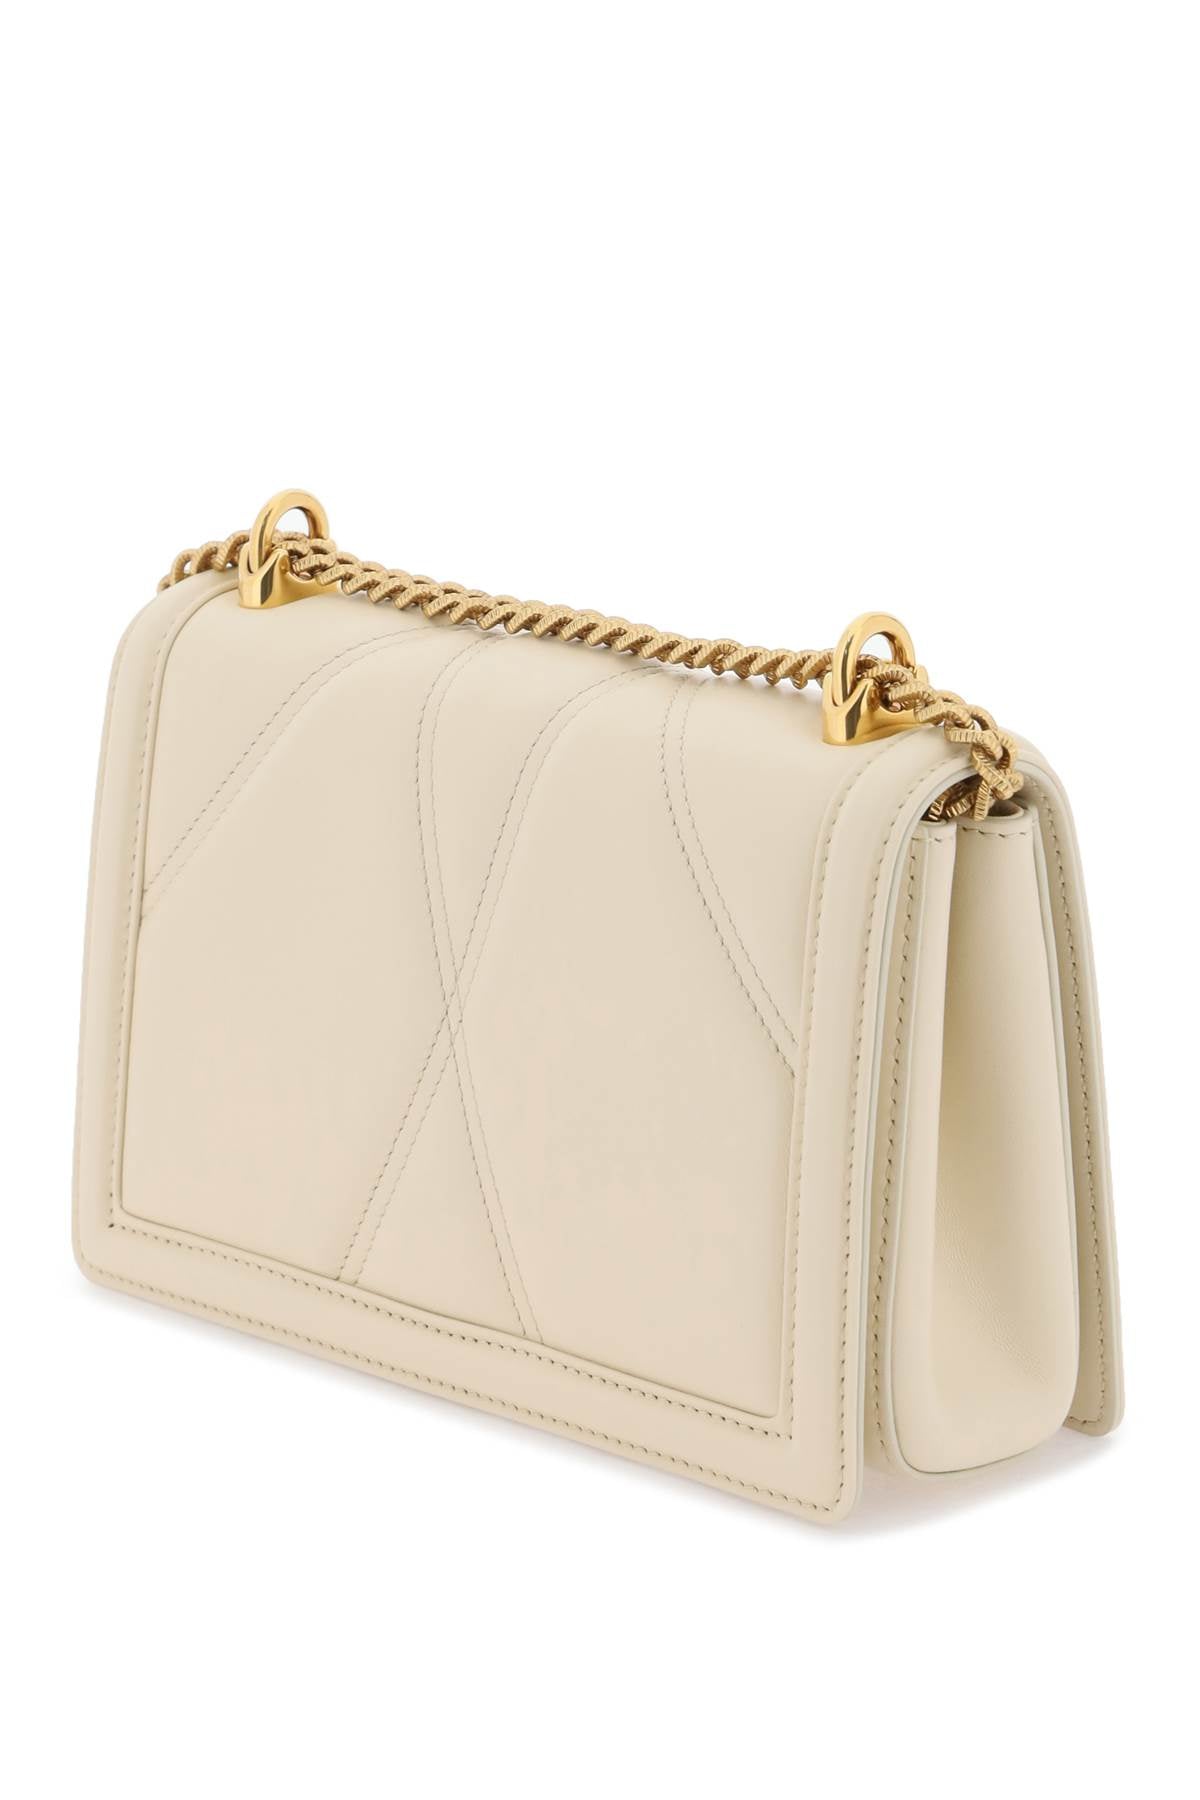 DOLCE & GABBANA Nude & Neutral Leather Shoulder Handbag for Women